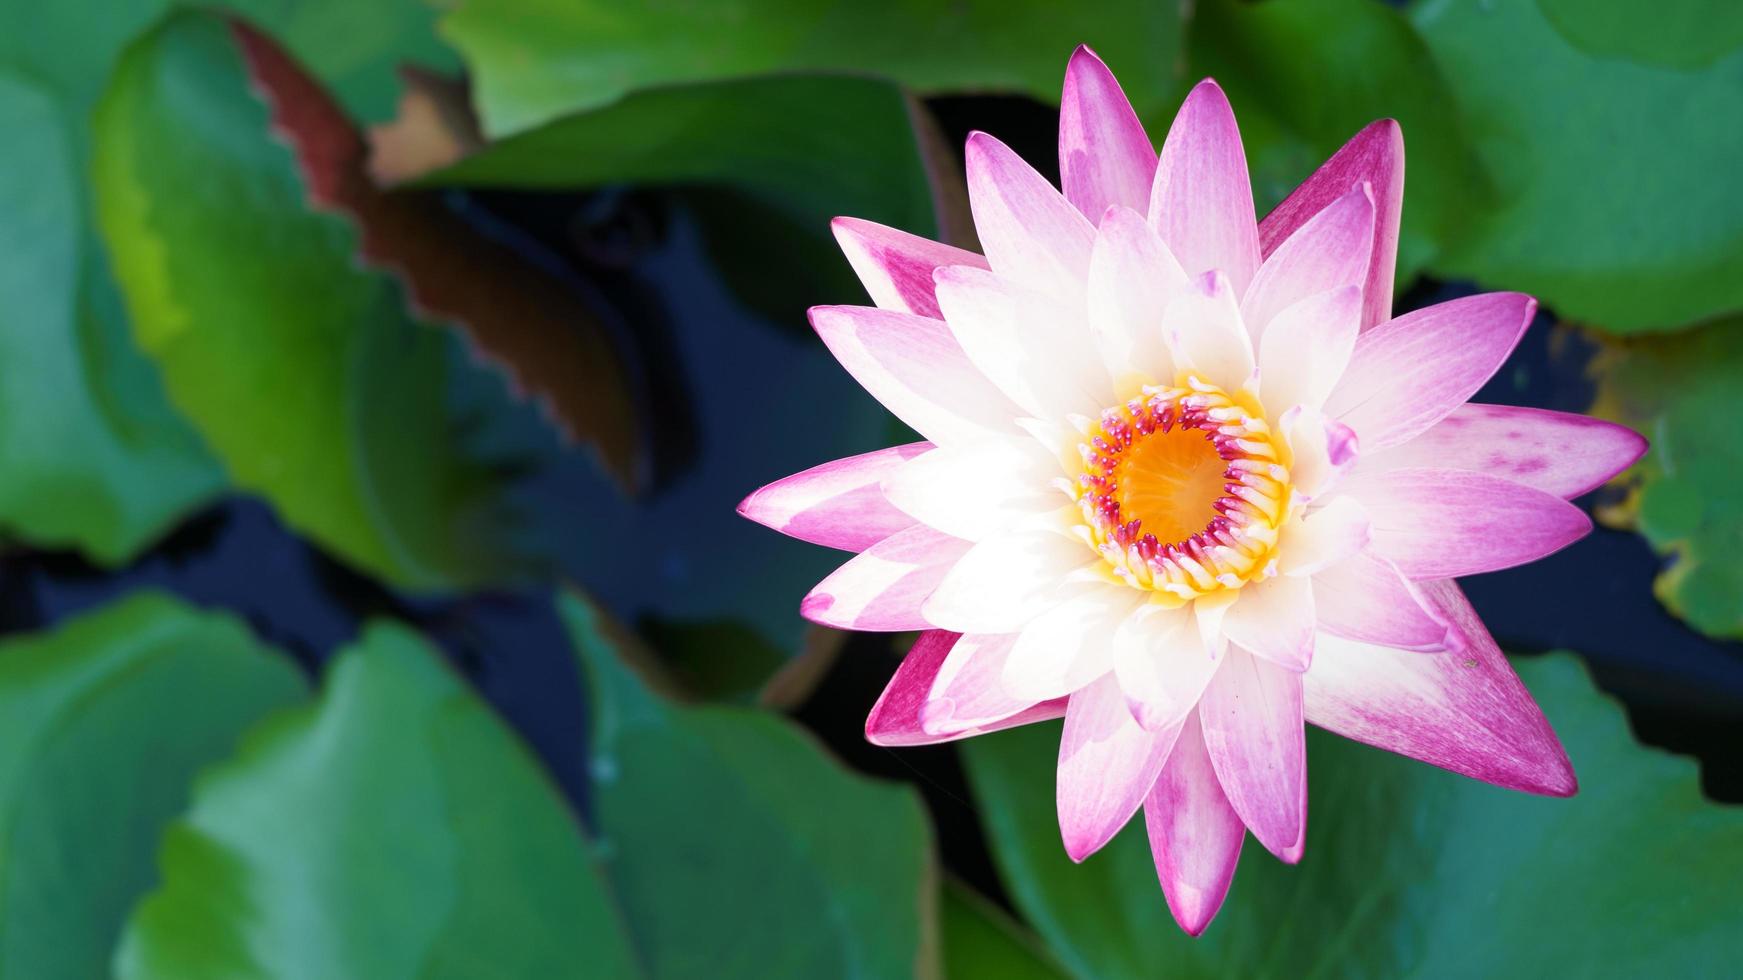 la belleza de las flores de loto que florecen en blanco y púrpura en el estanque. El lirio de agua, la paz, la belleza de la naturaleza, es la flor del budismo. foto